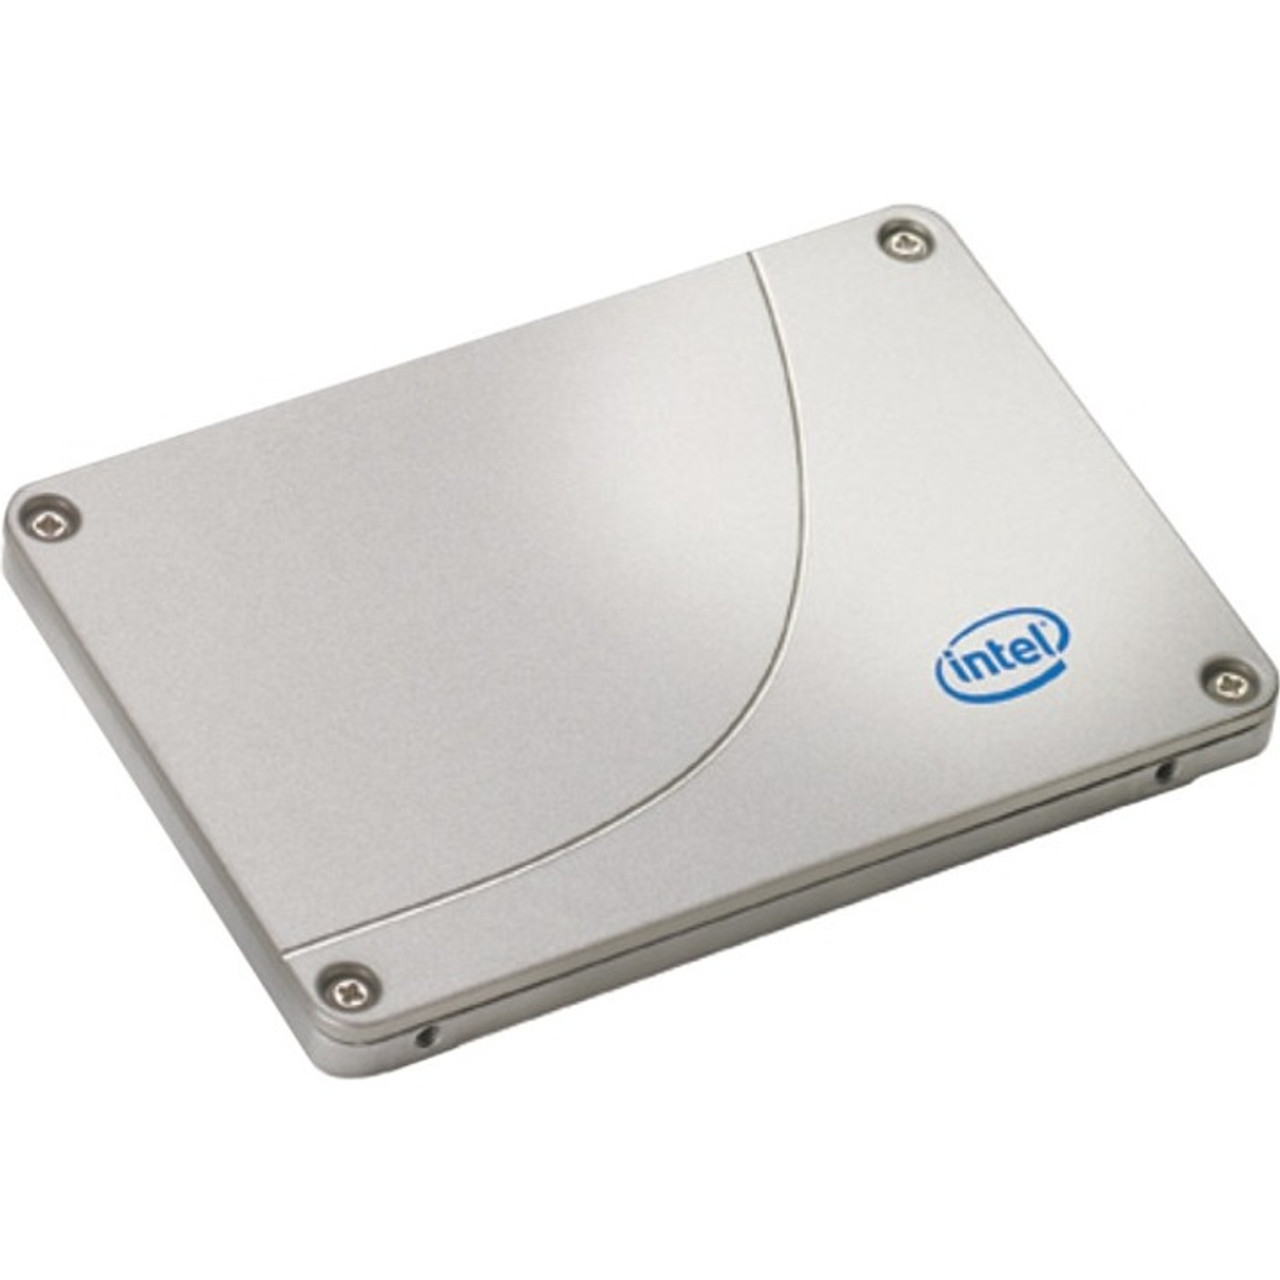 Intel X25-M SSDSA2M080G2GC 80 GB Solid State Drive - 2.5" Internal - SATA